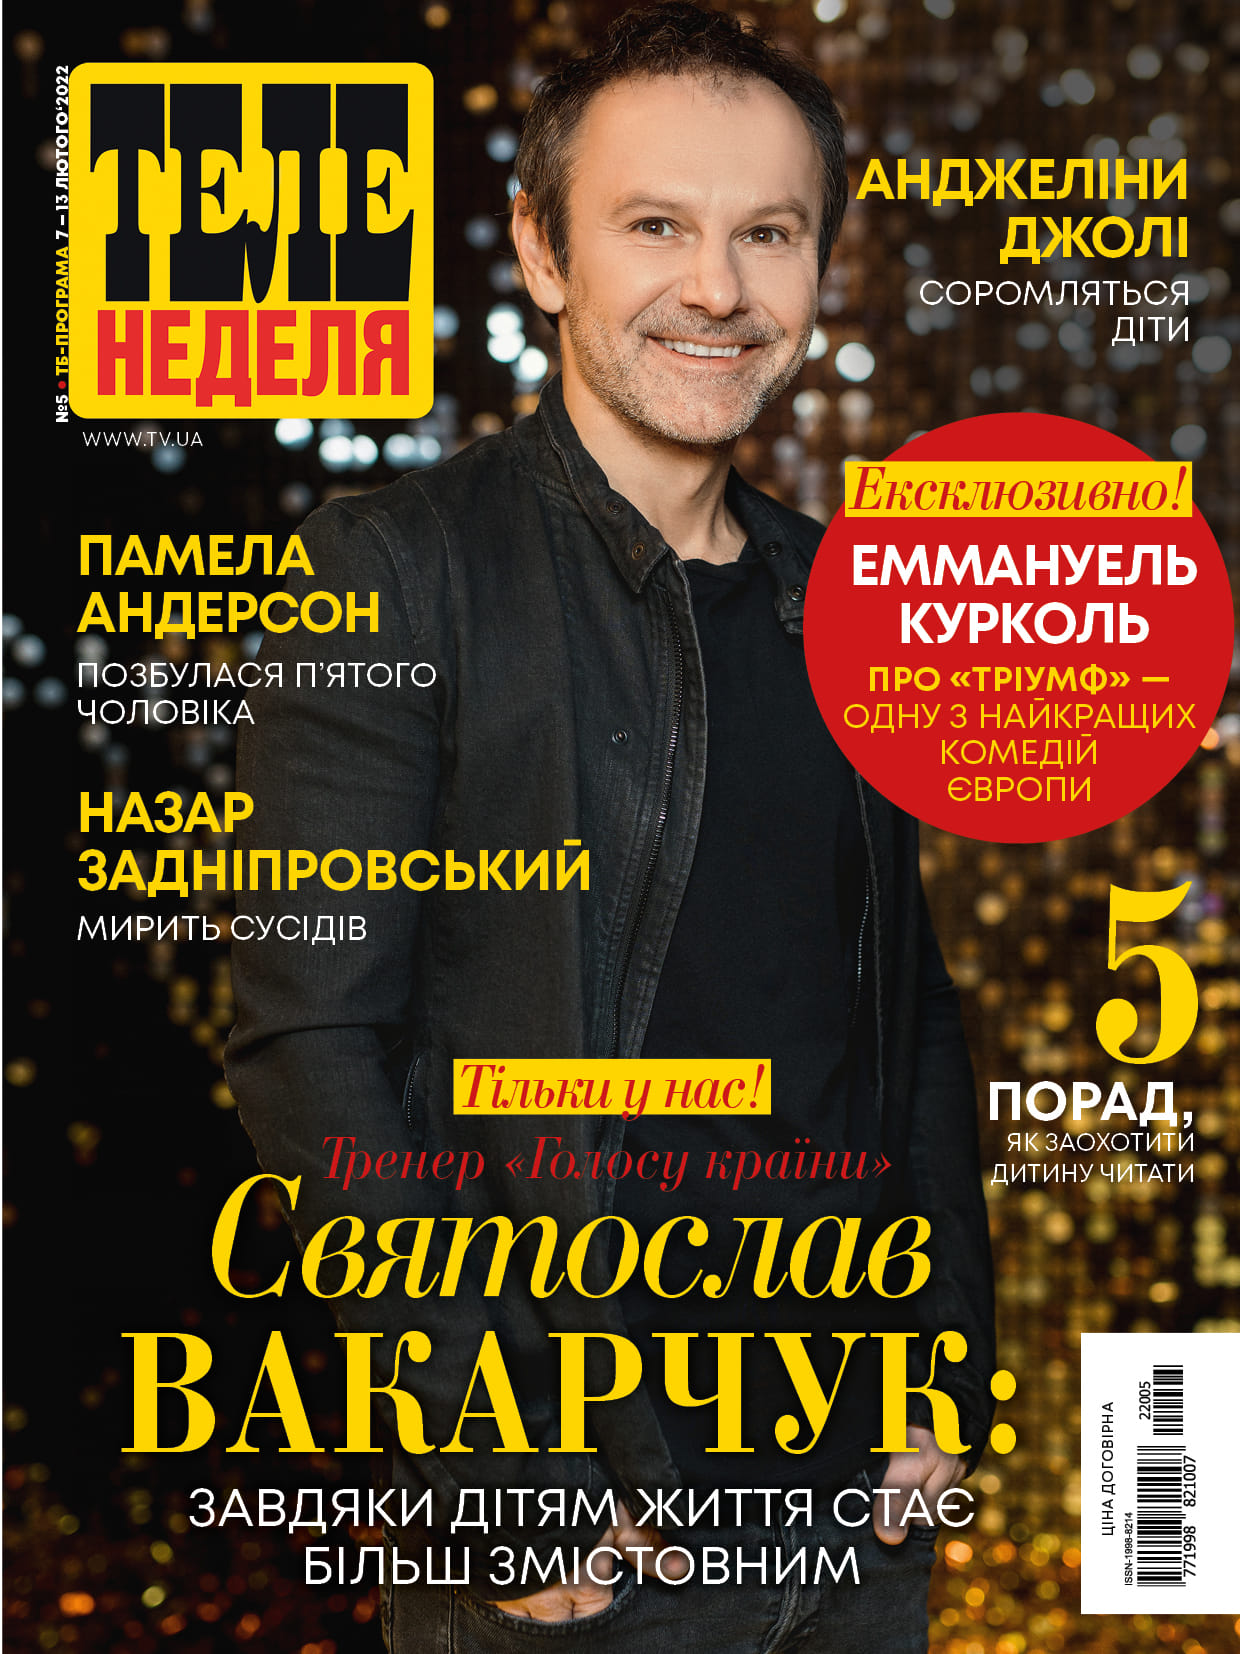 Святослав Вакарчук планирует записать альбом колыбельных для сына Ивана. Фото: обложка журнала Теленеделя